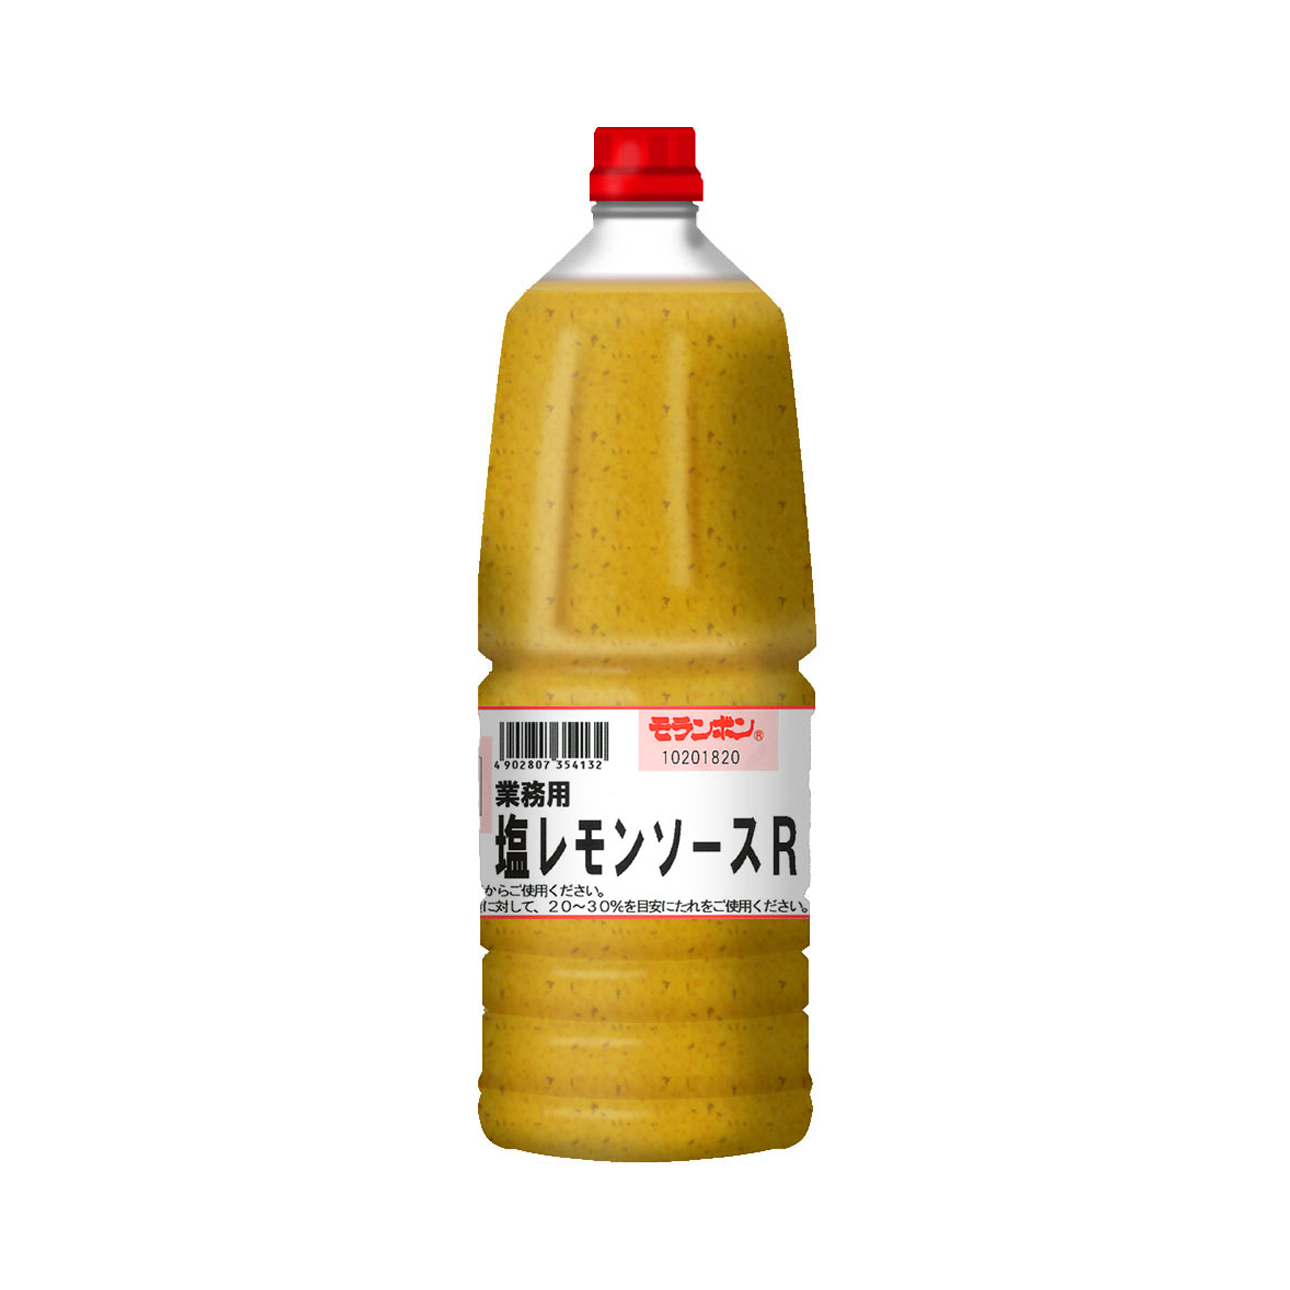 業務用 塩レモンソースR 2.05kg